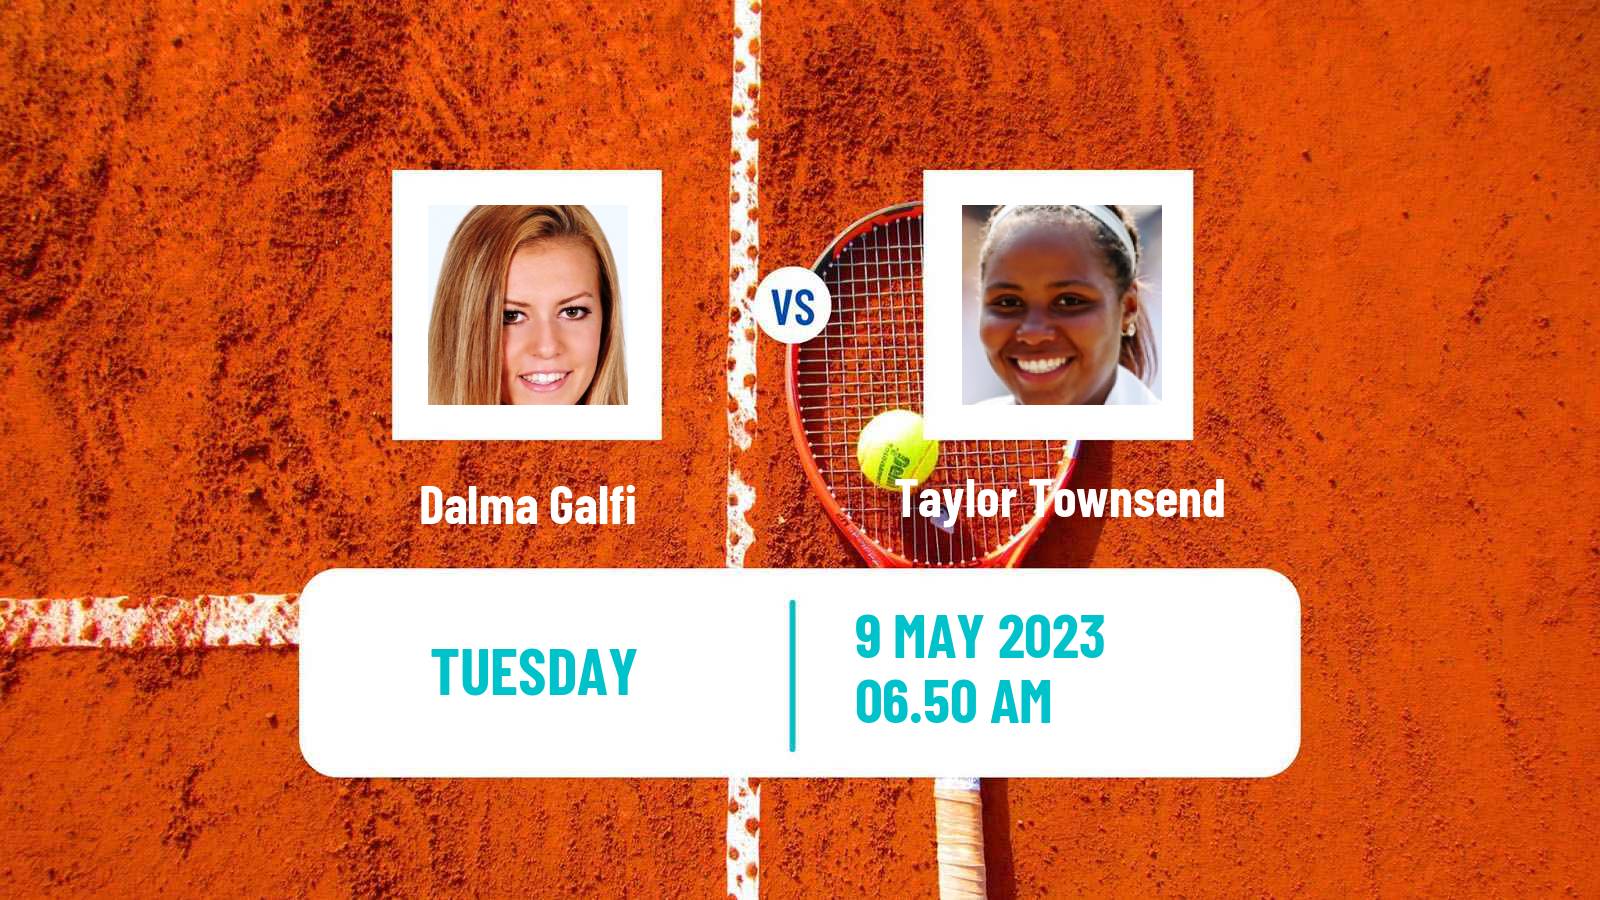 Tennis WTA Roma Dalma Galfi - Taylor Townsend